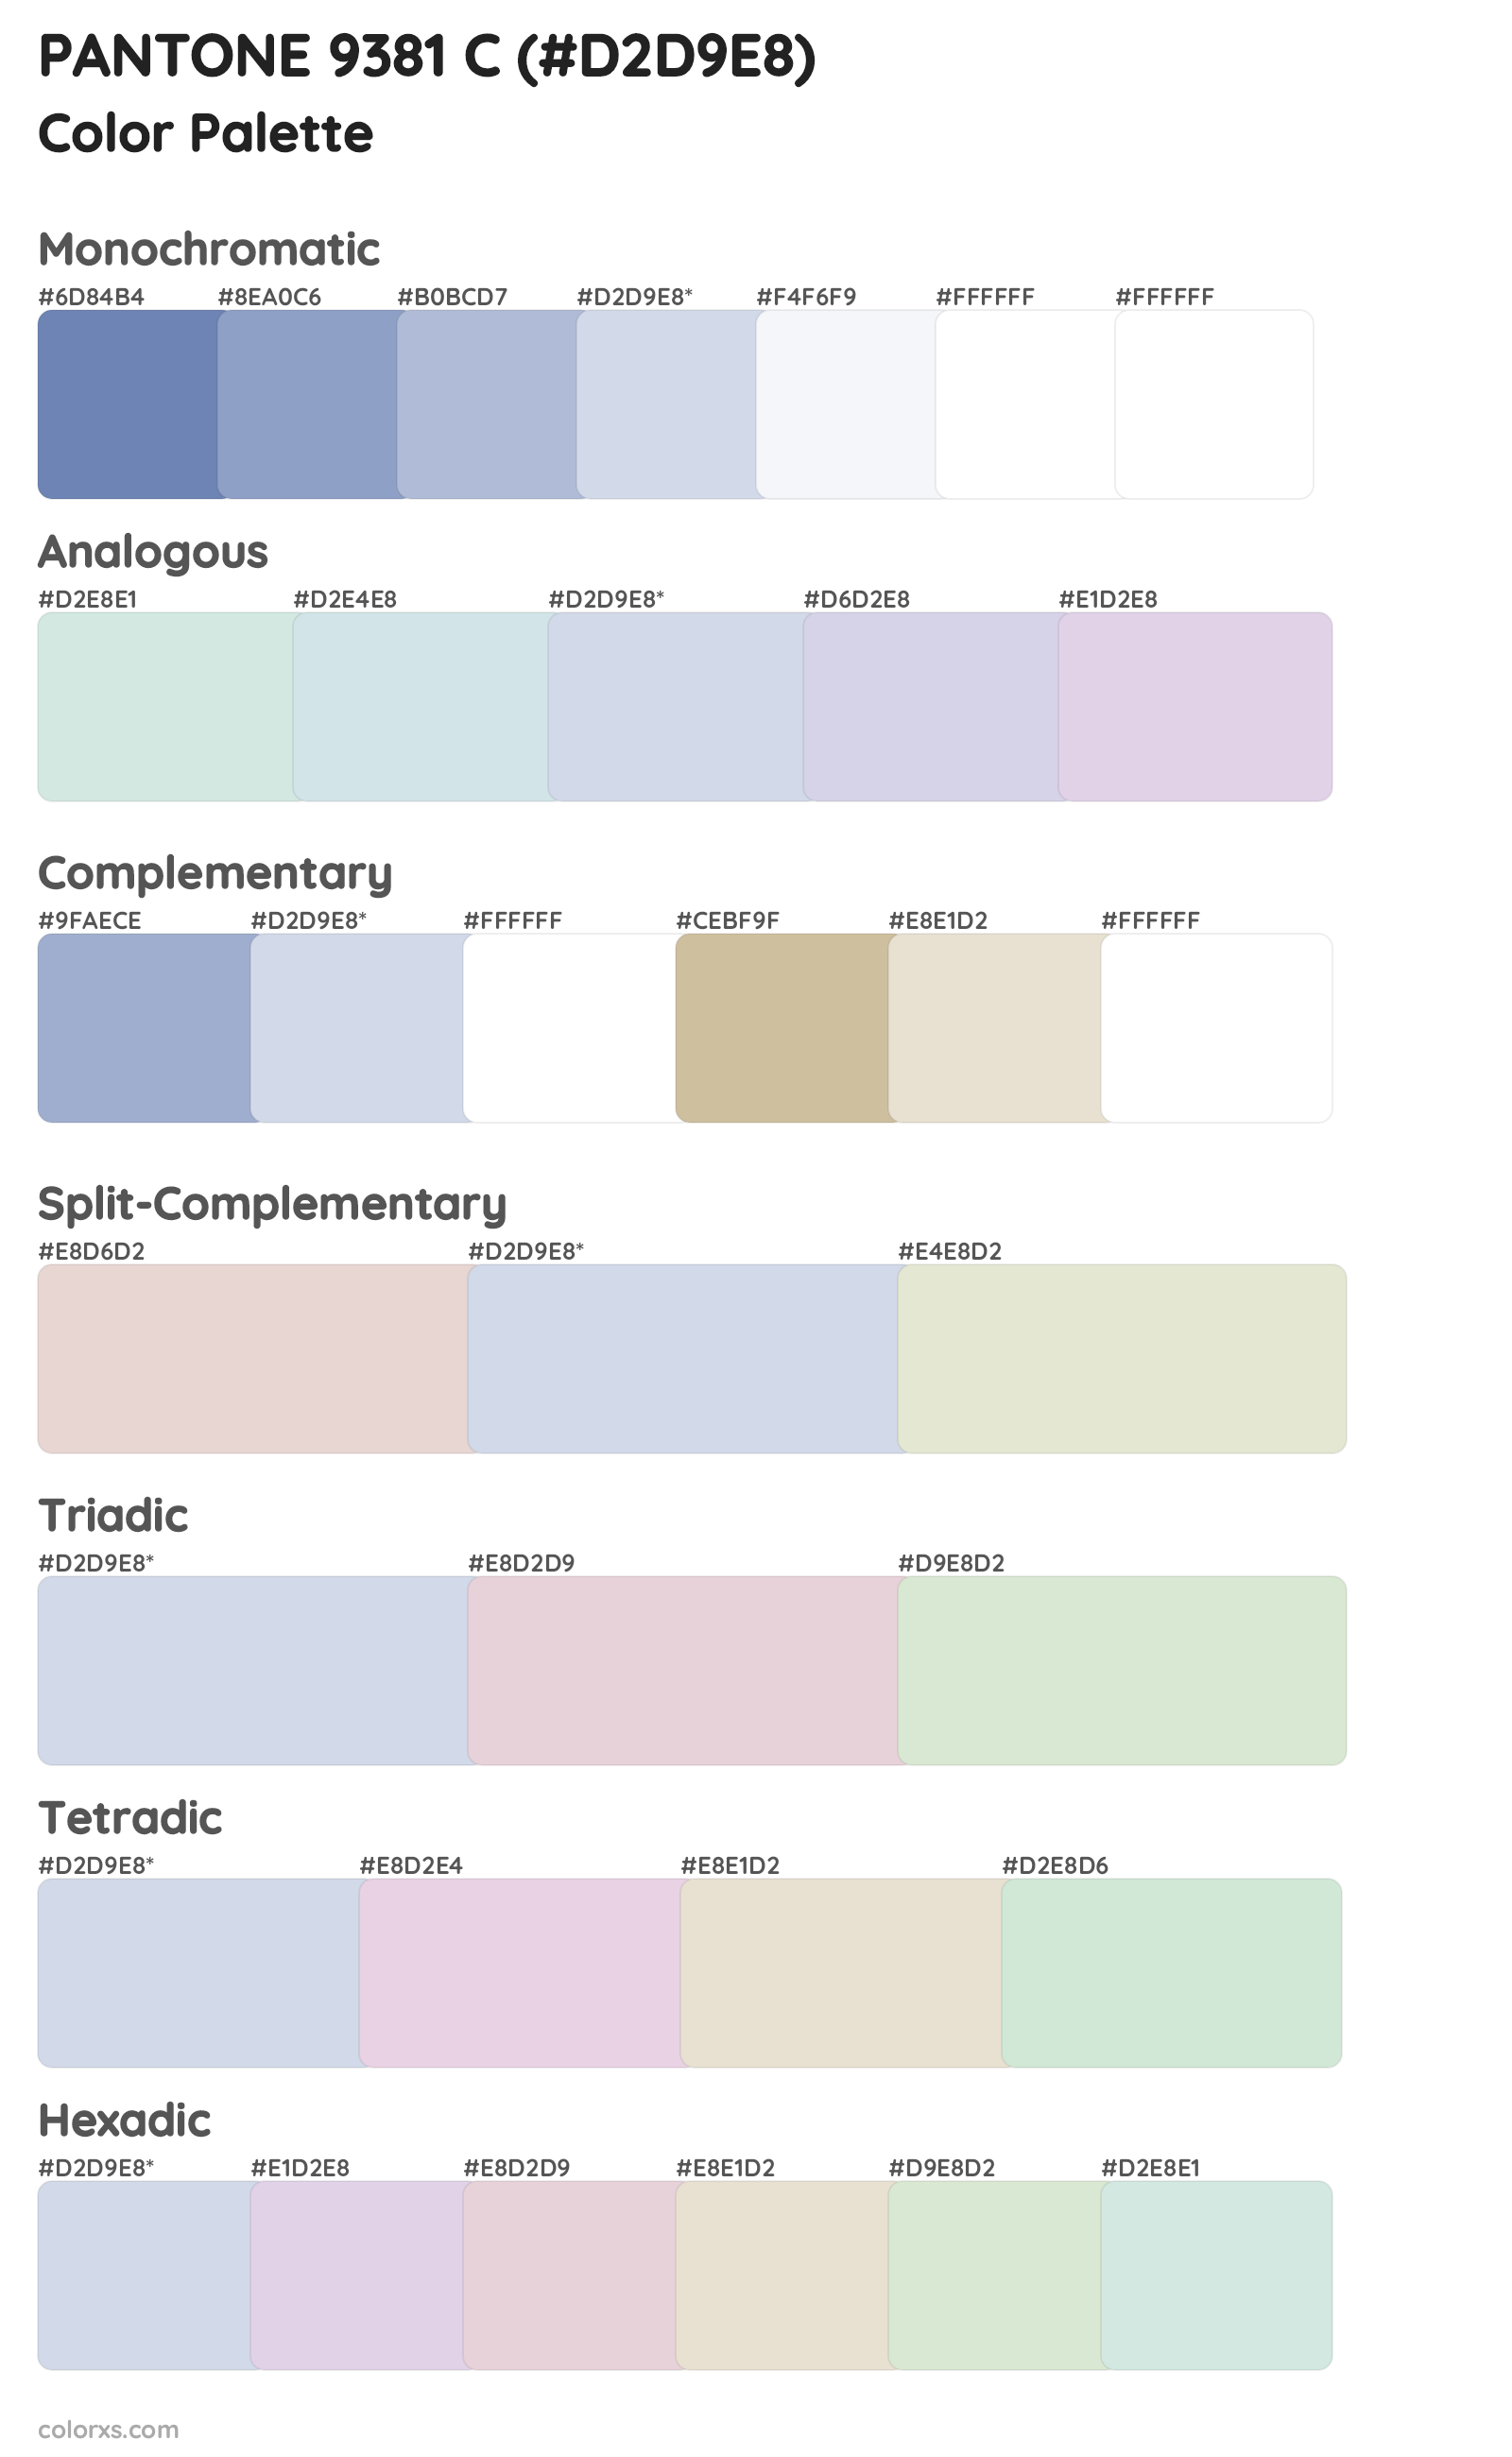 PANTONE 9381 C Color Scheme Palettes